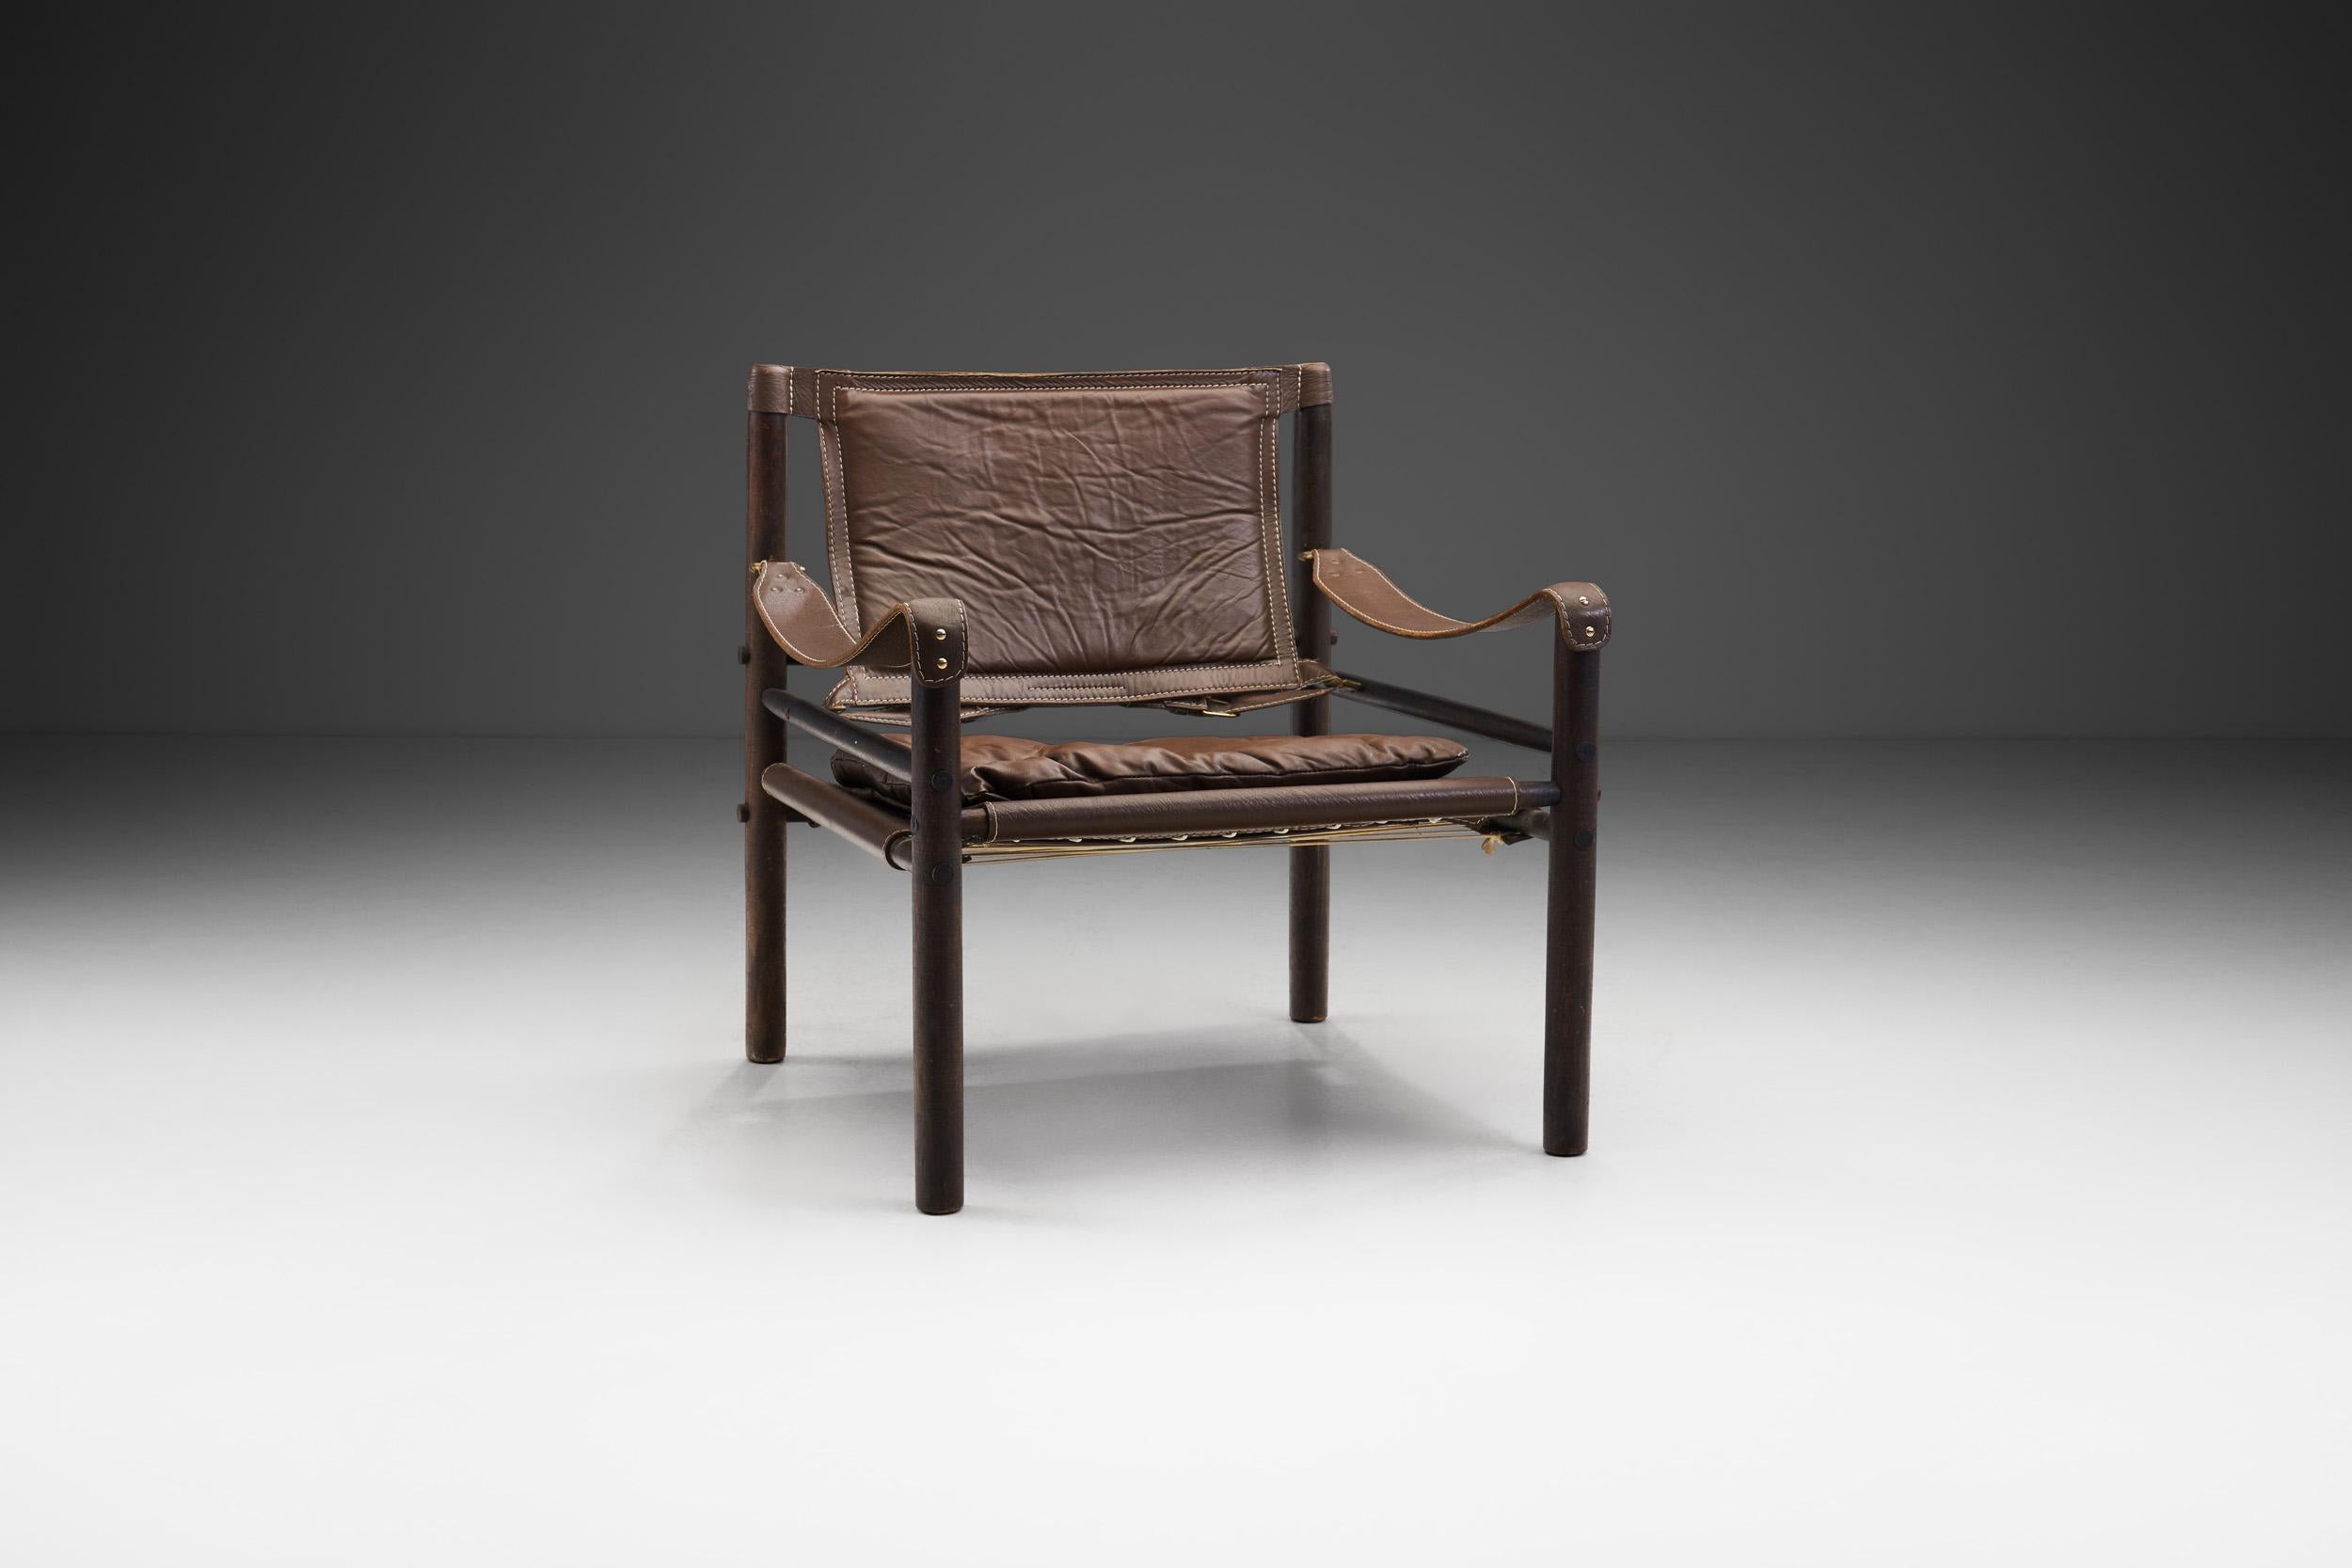 Der ursprüngliche Sirocco-Stuhl wurde 1964 von Arne Norell entworfen und in Schweden in derselben Fabrik handgefertigt, die Norell in den 1960er Jahren gegründet hatte. Dieses Modell ist ein moderner Klassiker mit allen Merkmalen eines echten